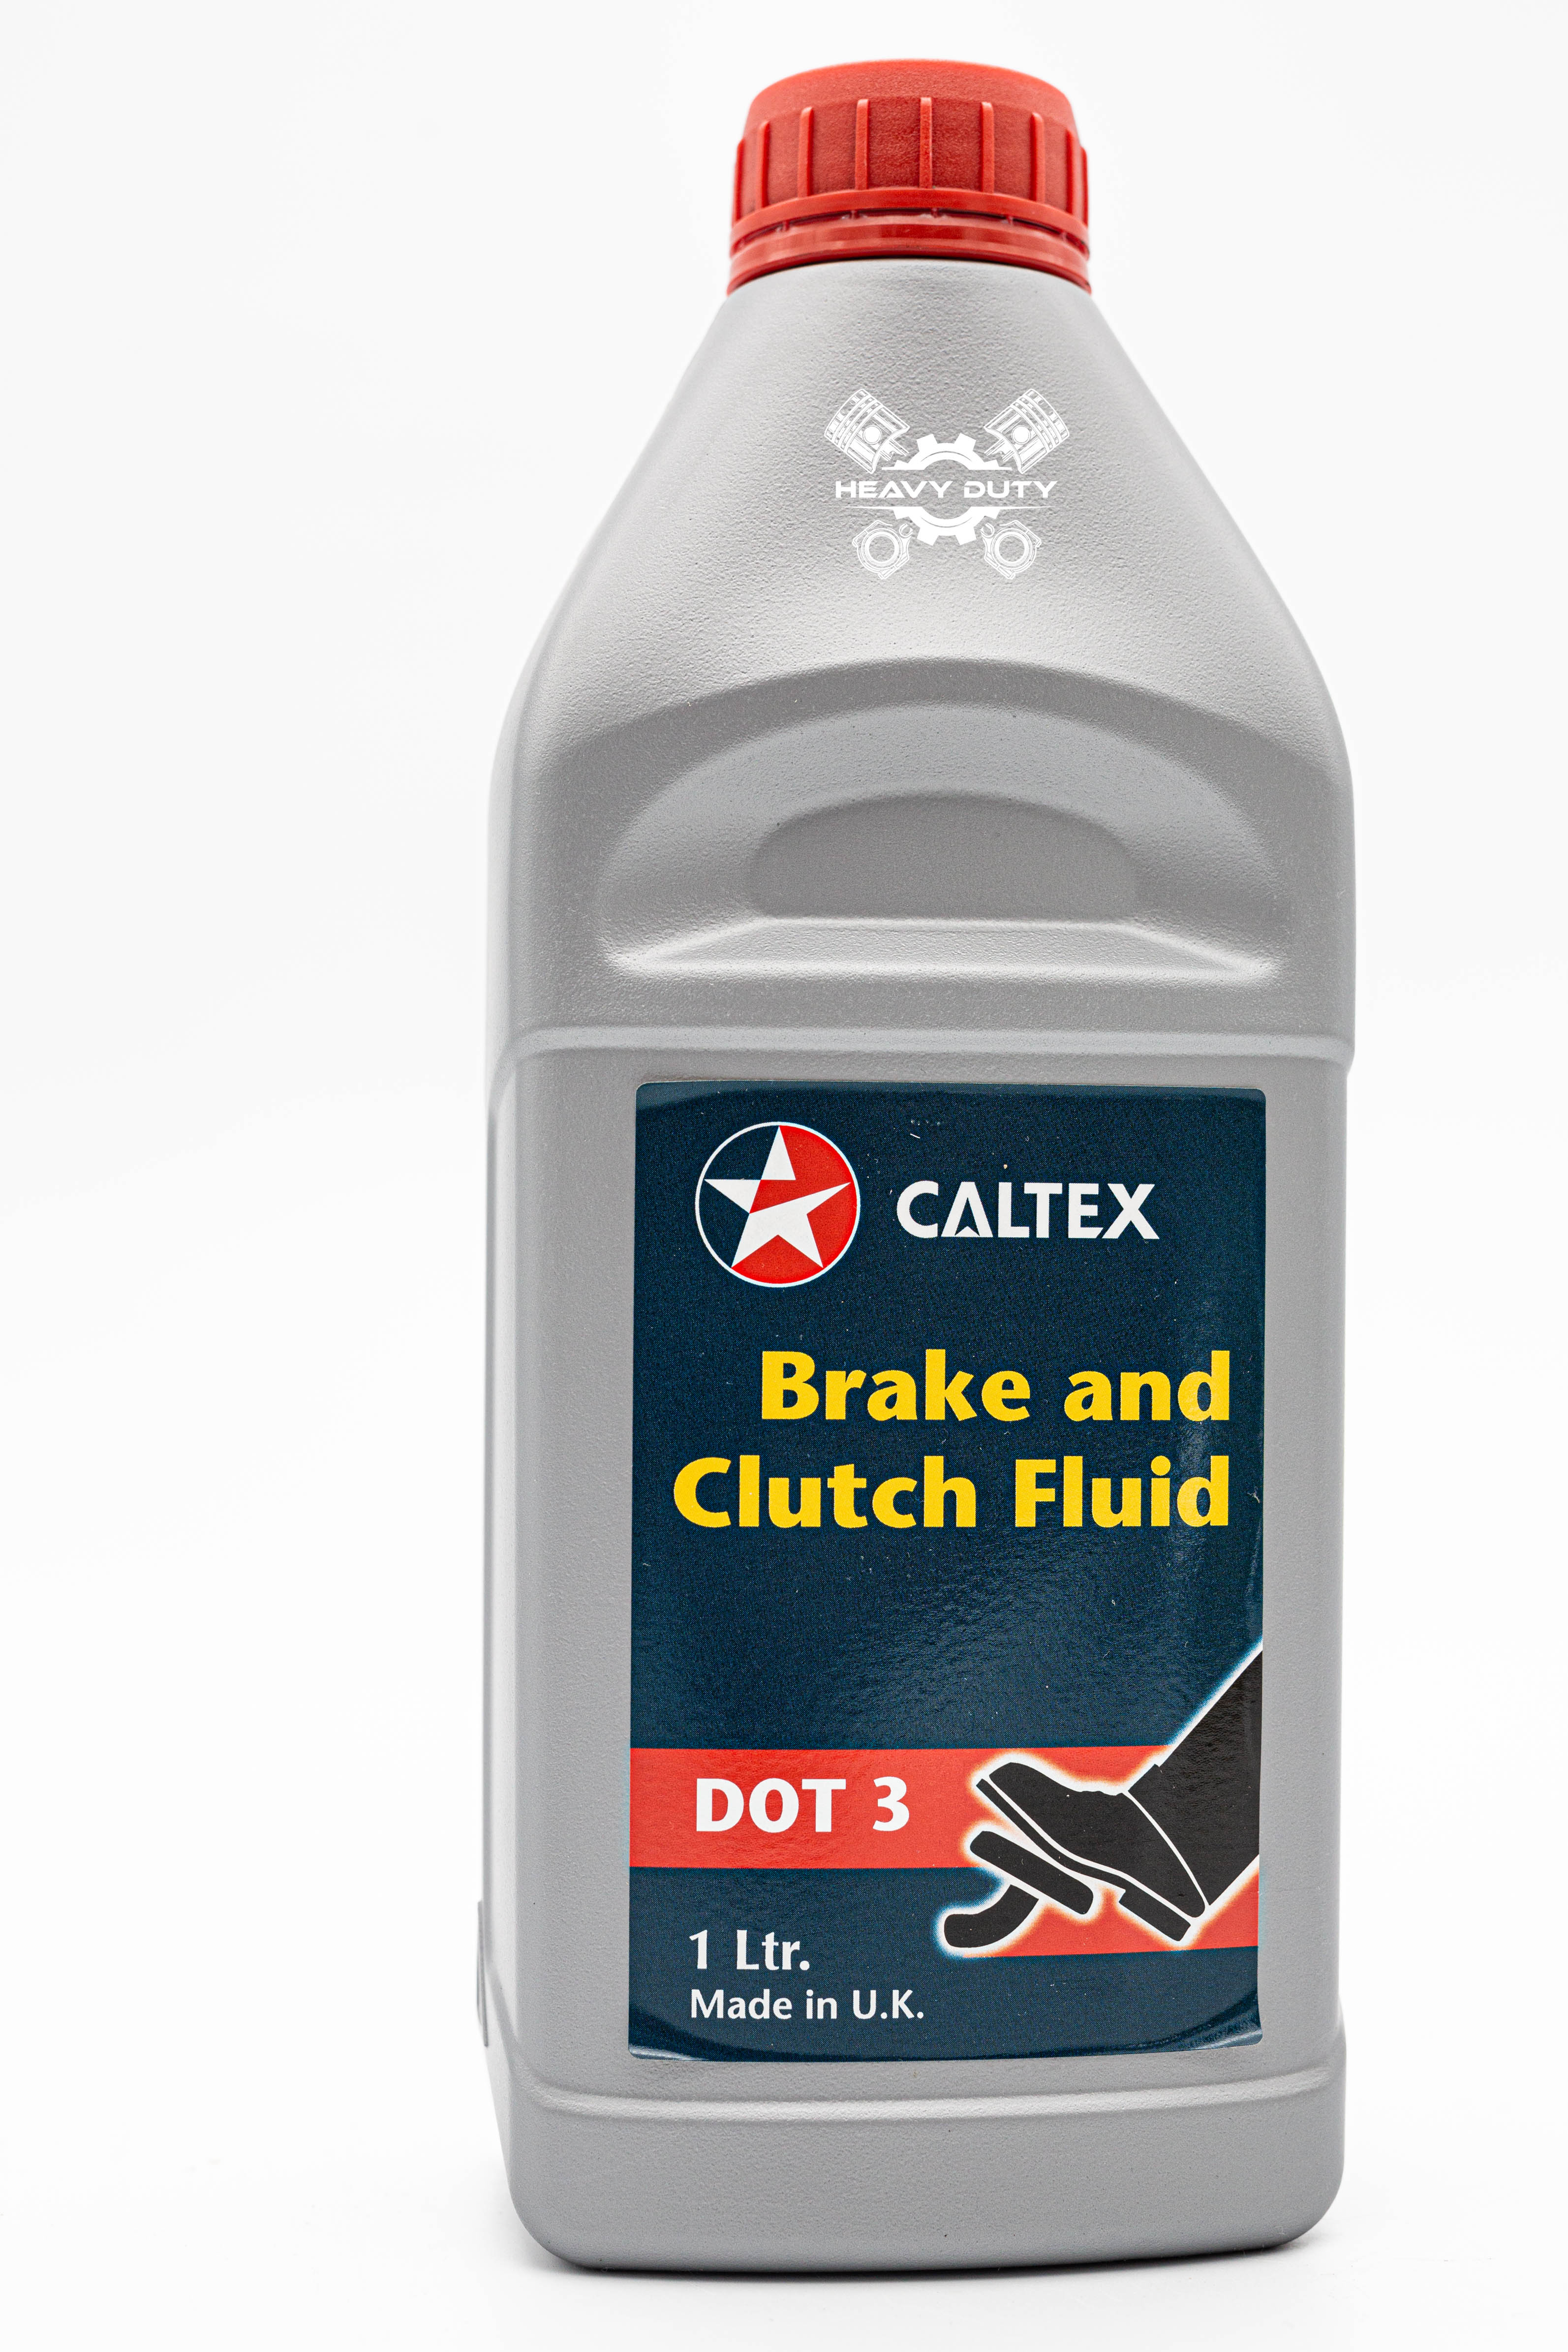 Dầu Thắng Caltex Dot 3 - Brake and Clutch Fluid DOT 3 1L